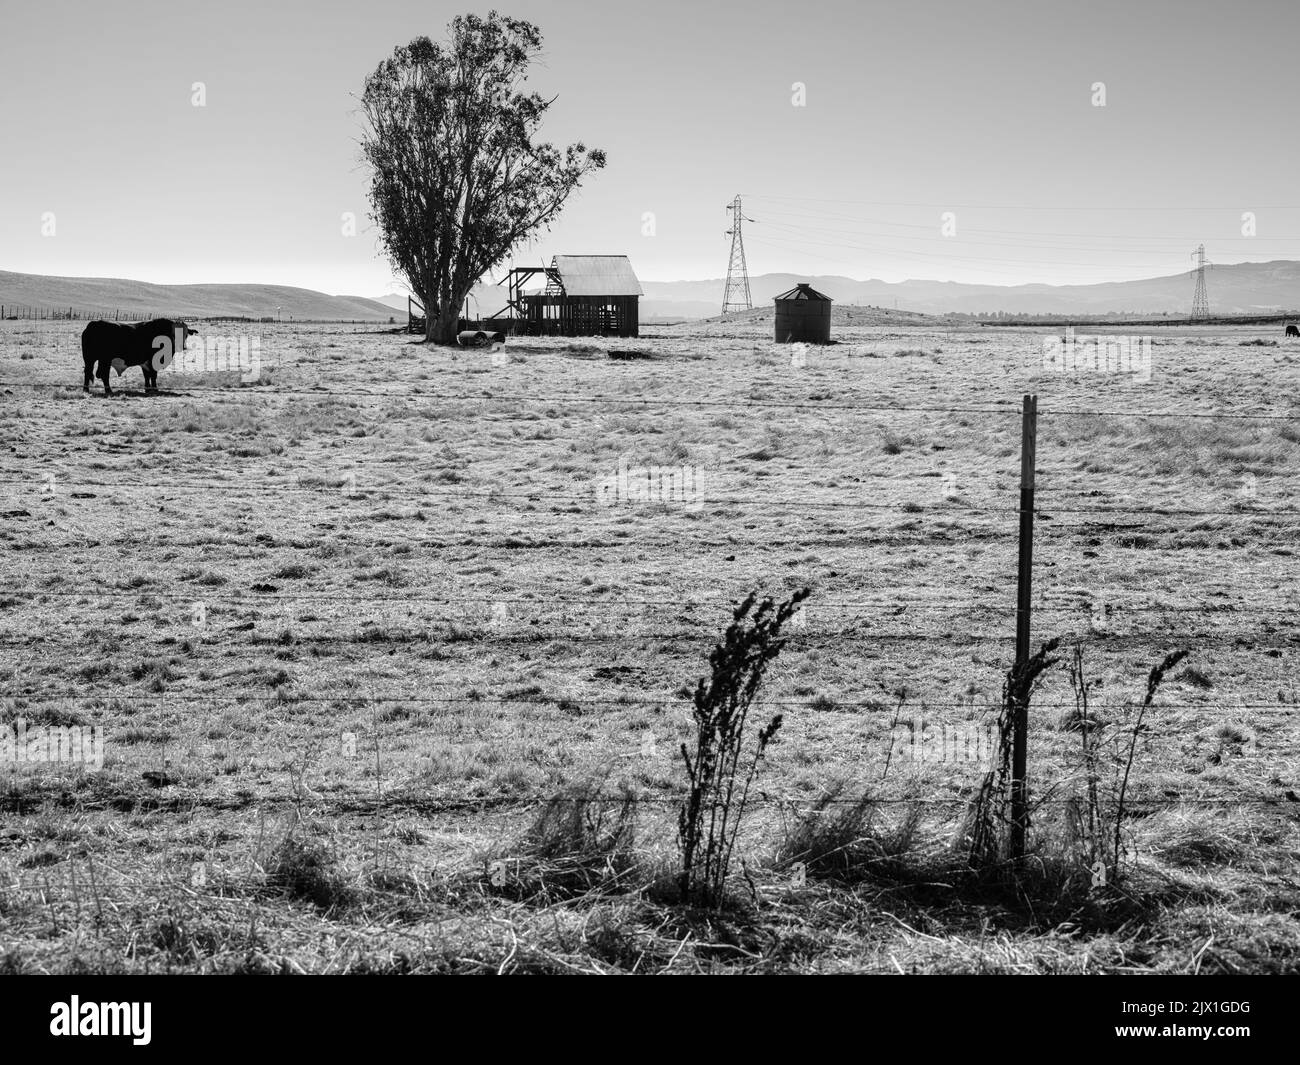 Dans un paysage paisible, une vache serpente à travers la prairie, regardant la caméra en direction d'une grange pourrie et d'un vieux silo rouillé dans le mi Banque D'Images